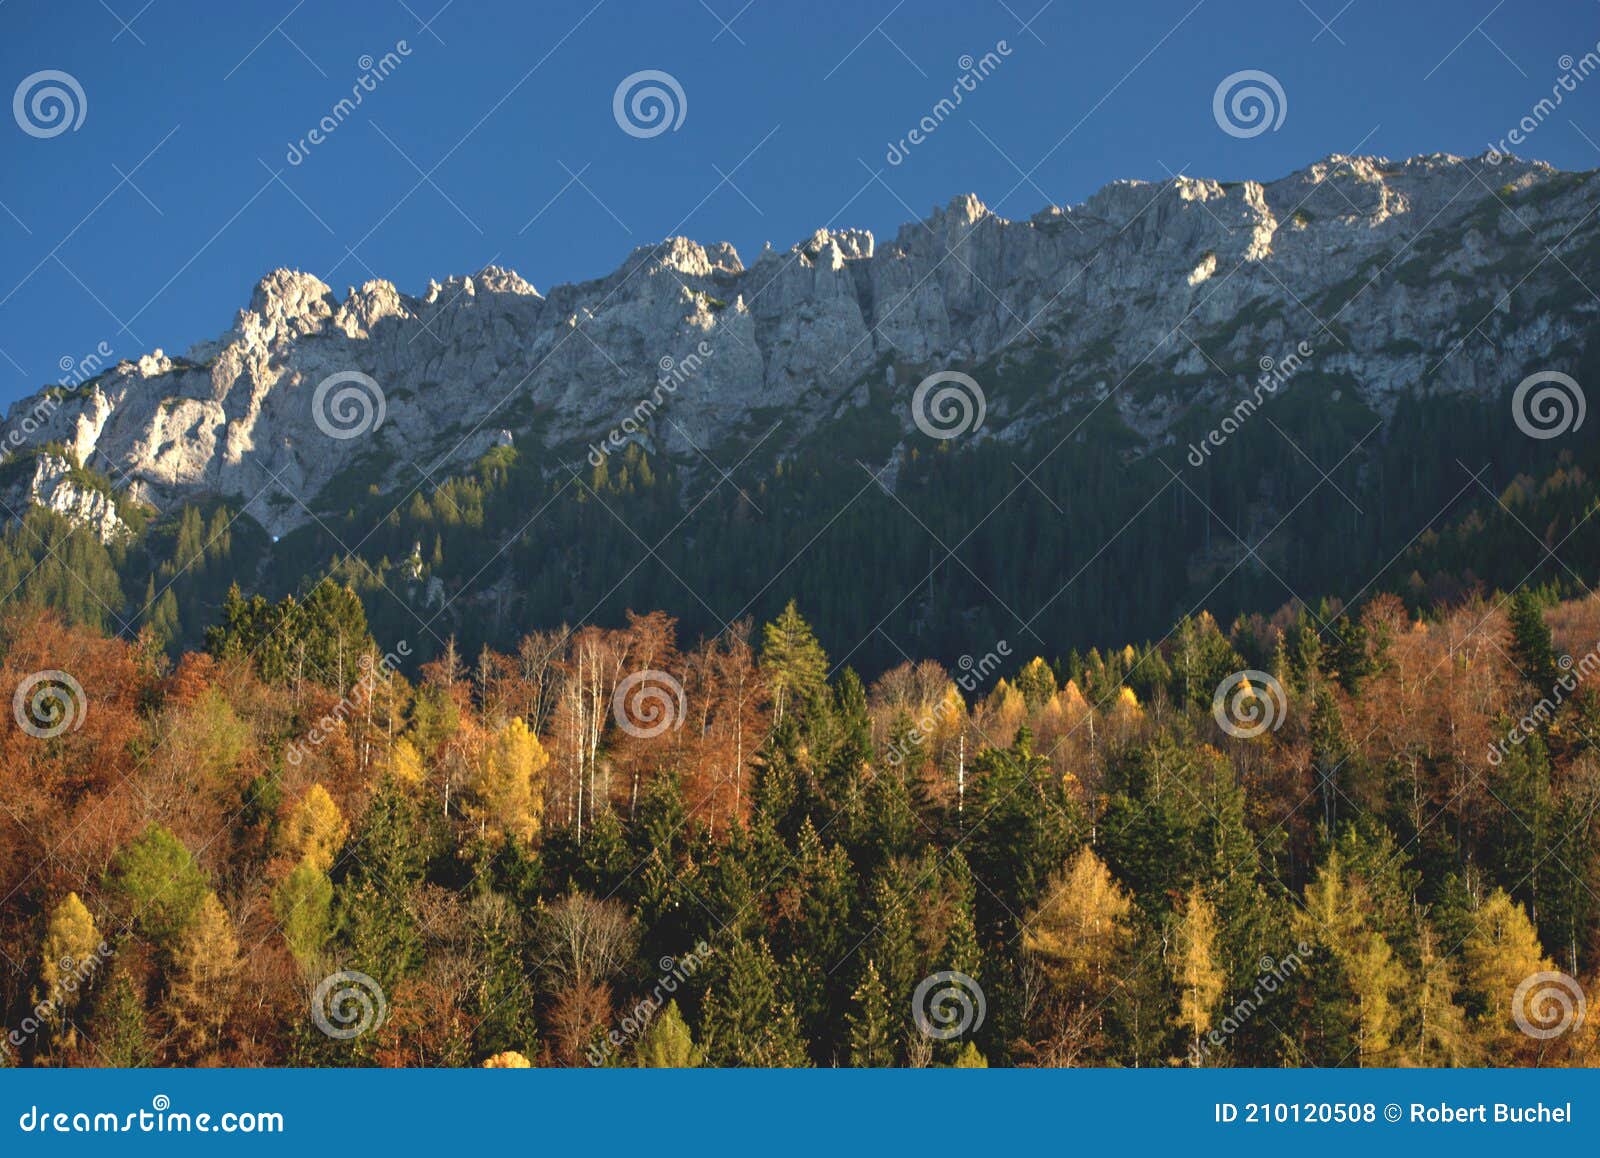 colorful autumn mood in planken in liechtenstein 11.11.2020